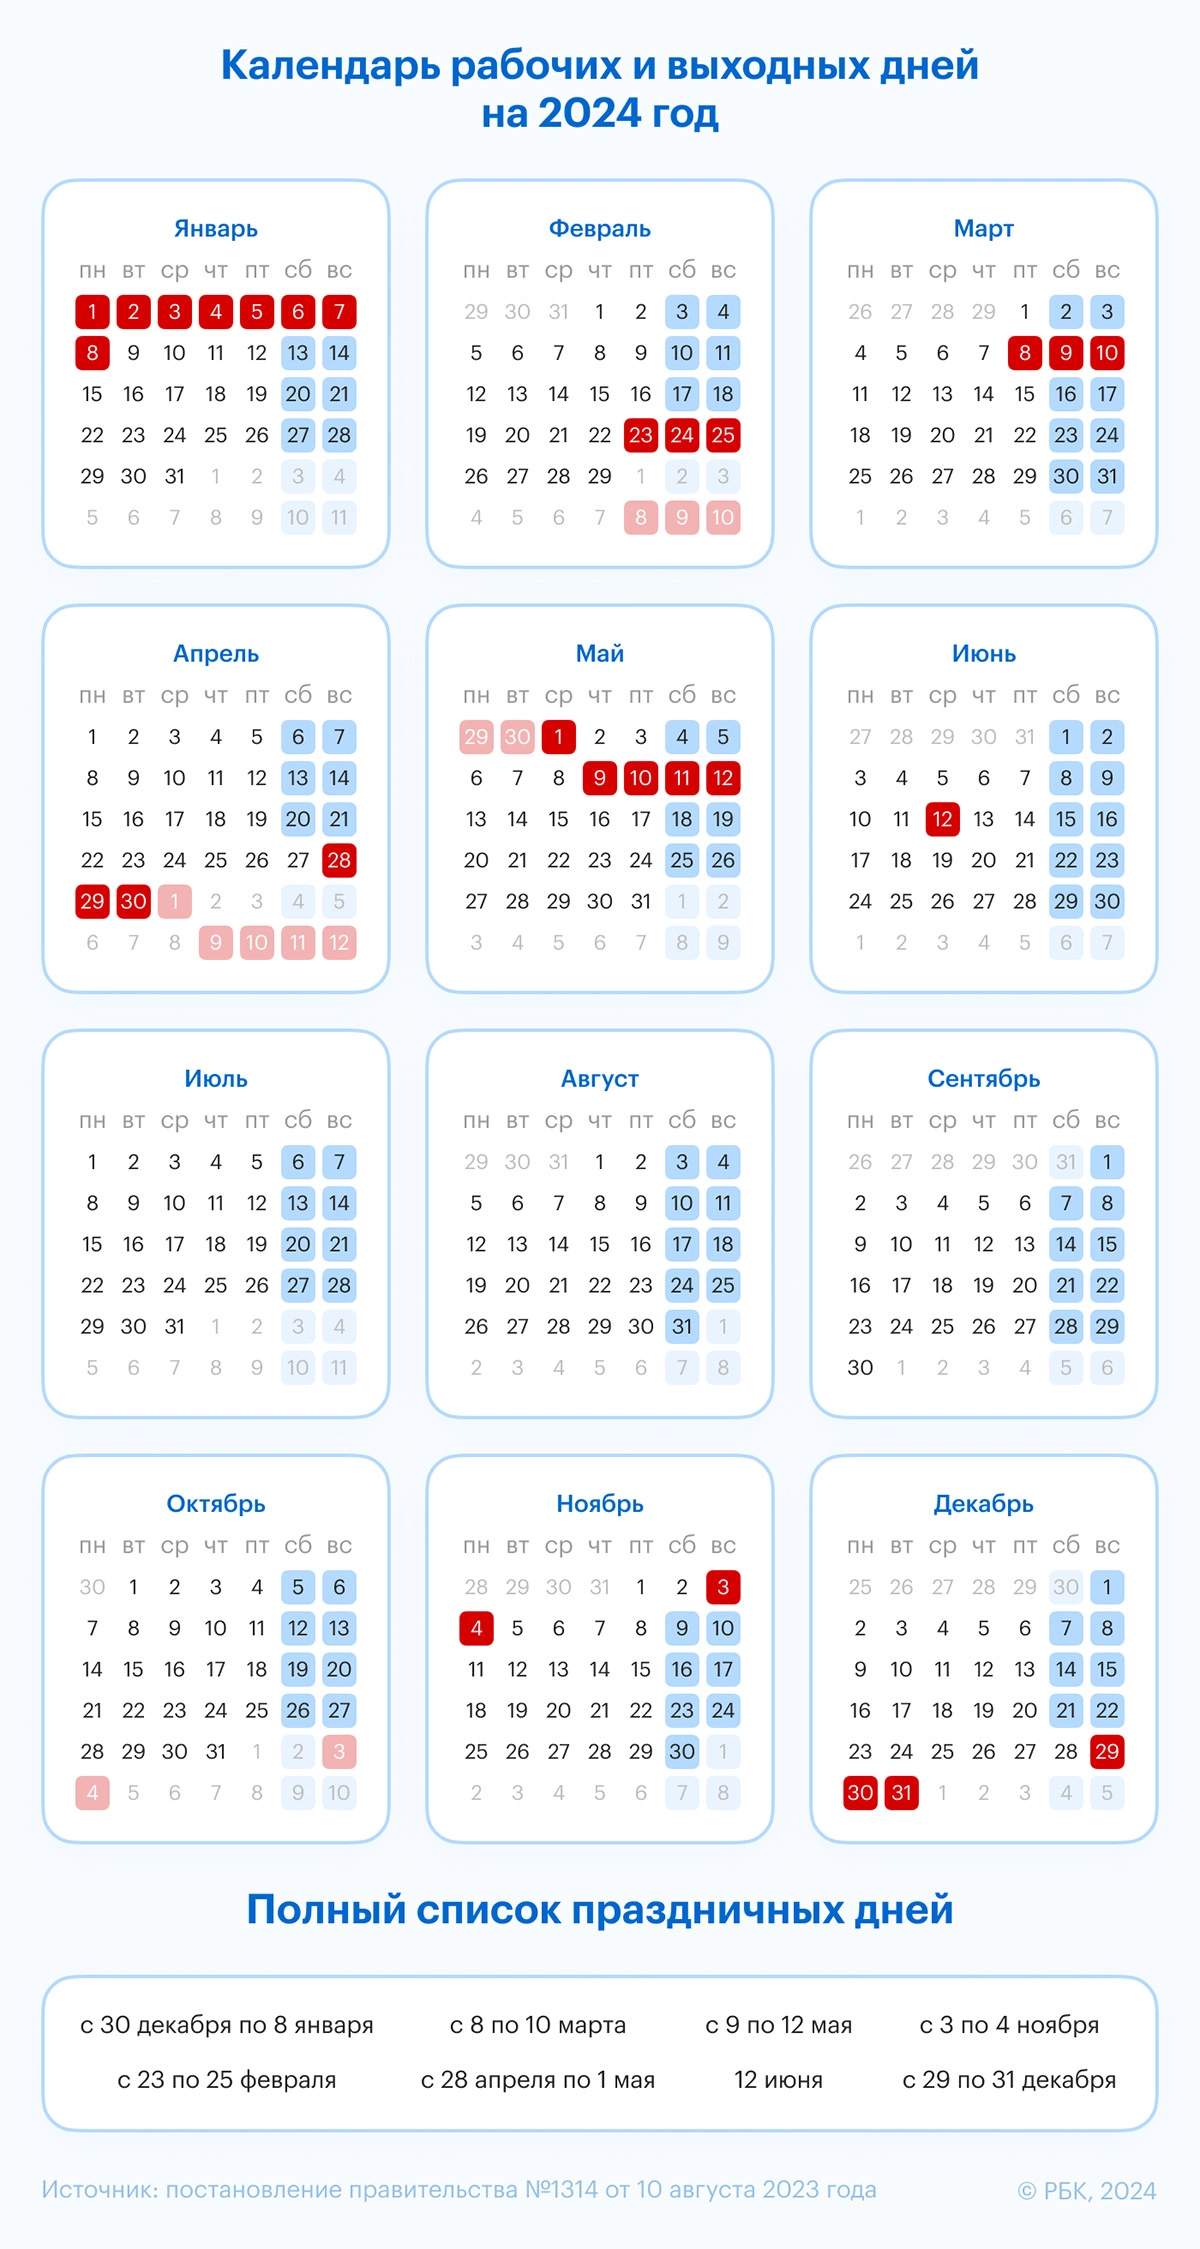 Как создать повторяющееся мероприятие - Android - Cправка - Google Календарь